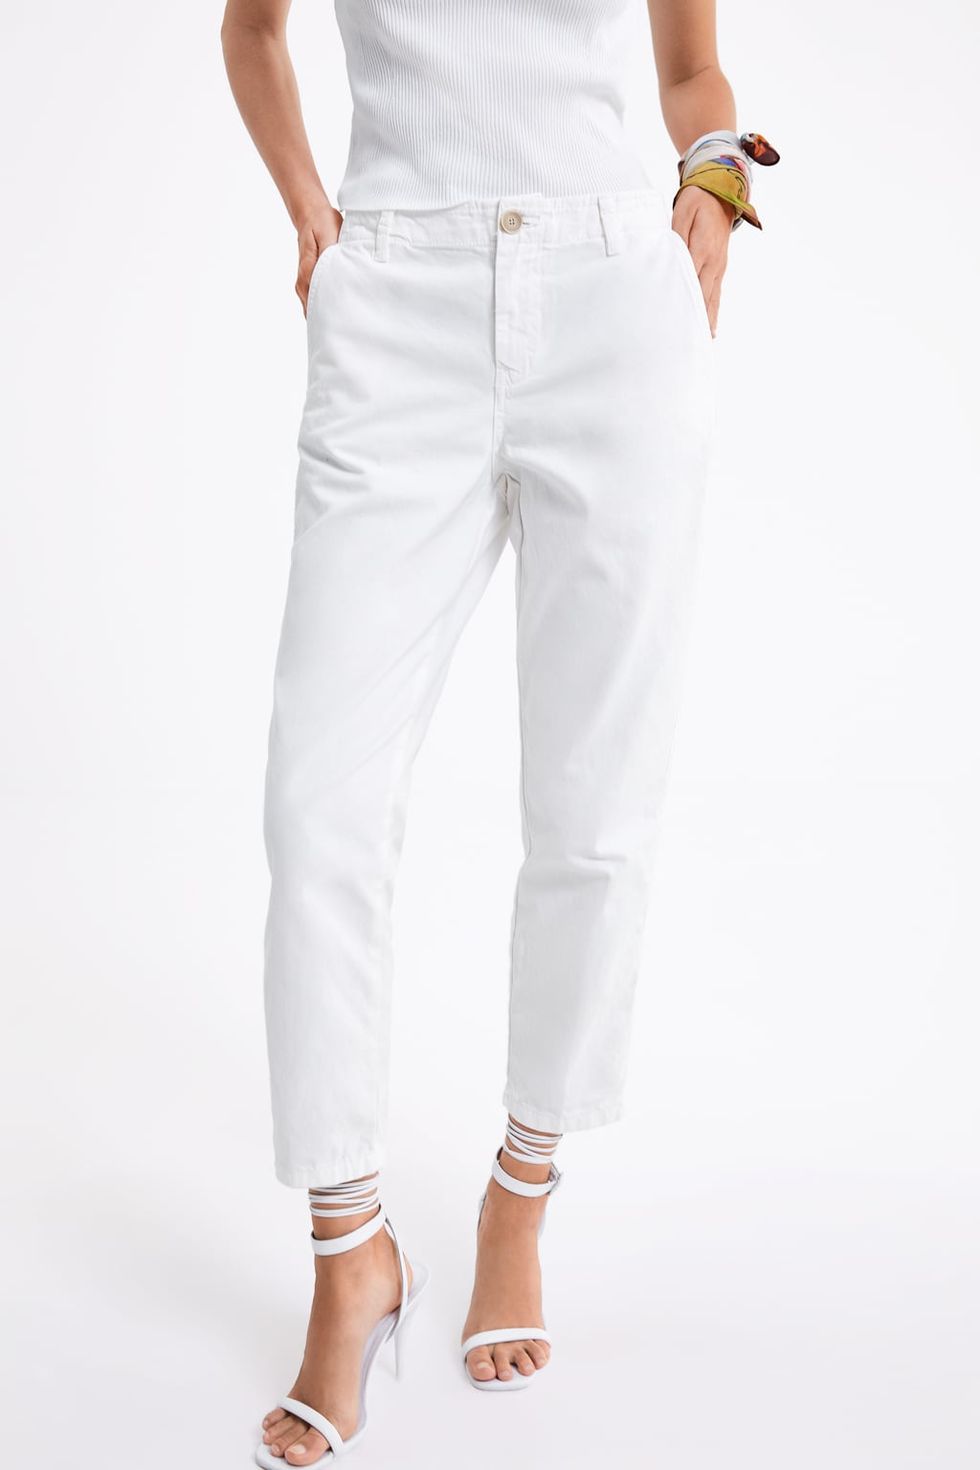 El pantalón blanco de Zara de 30 que es mitad mitad chino y todo mundo me pregunta que de dónde es